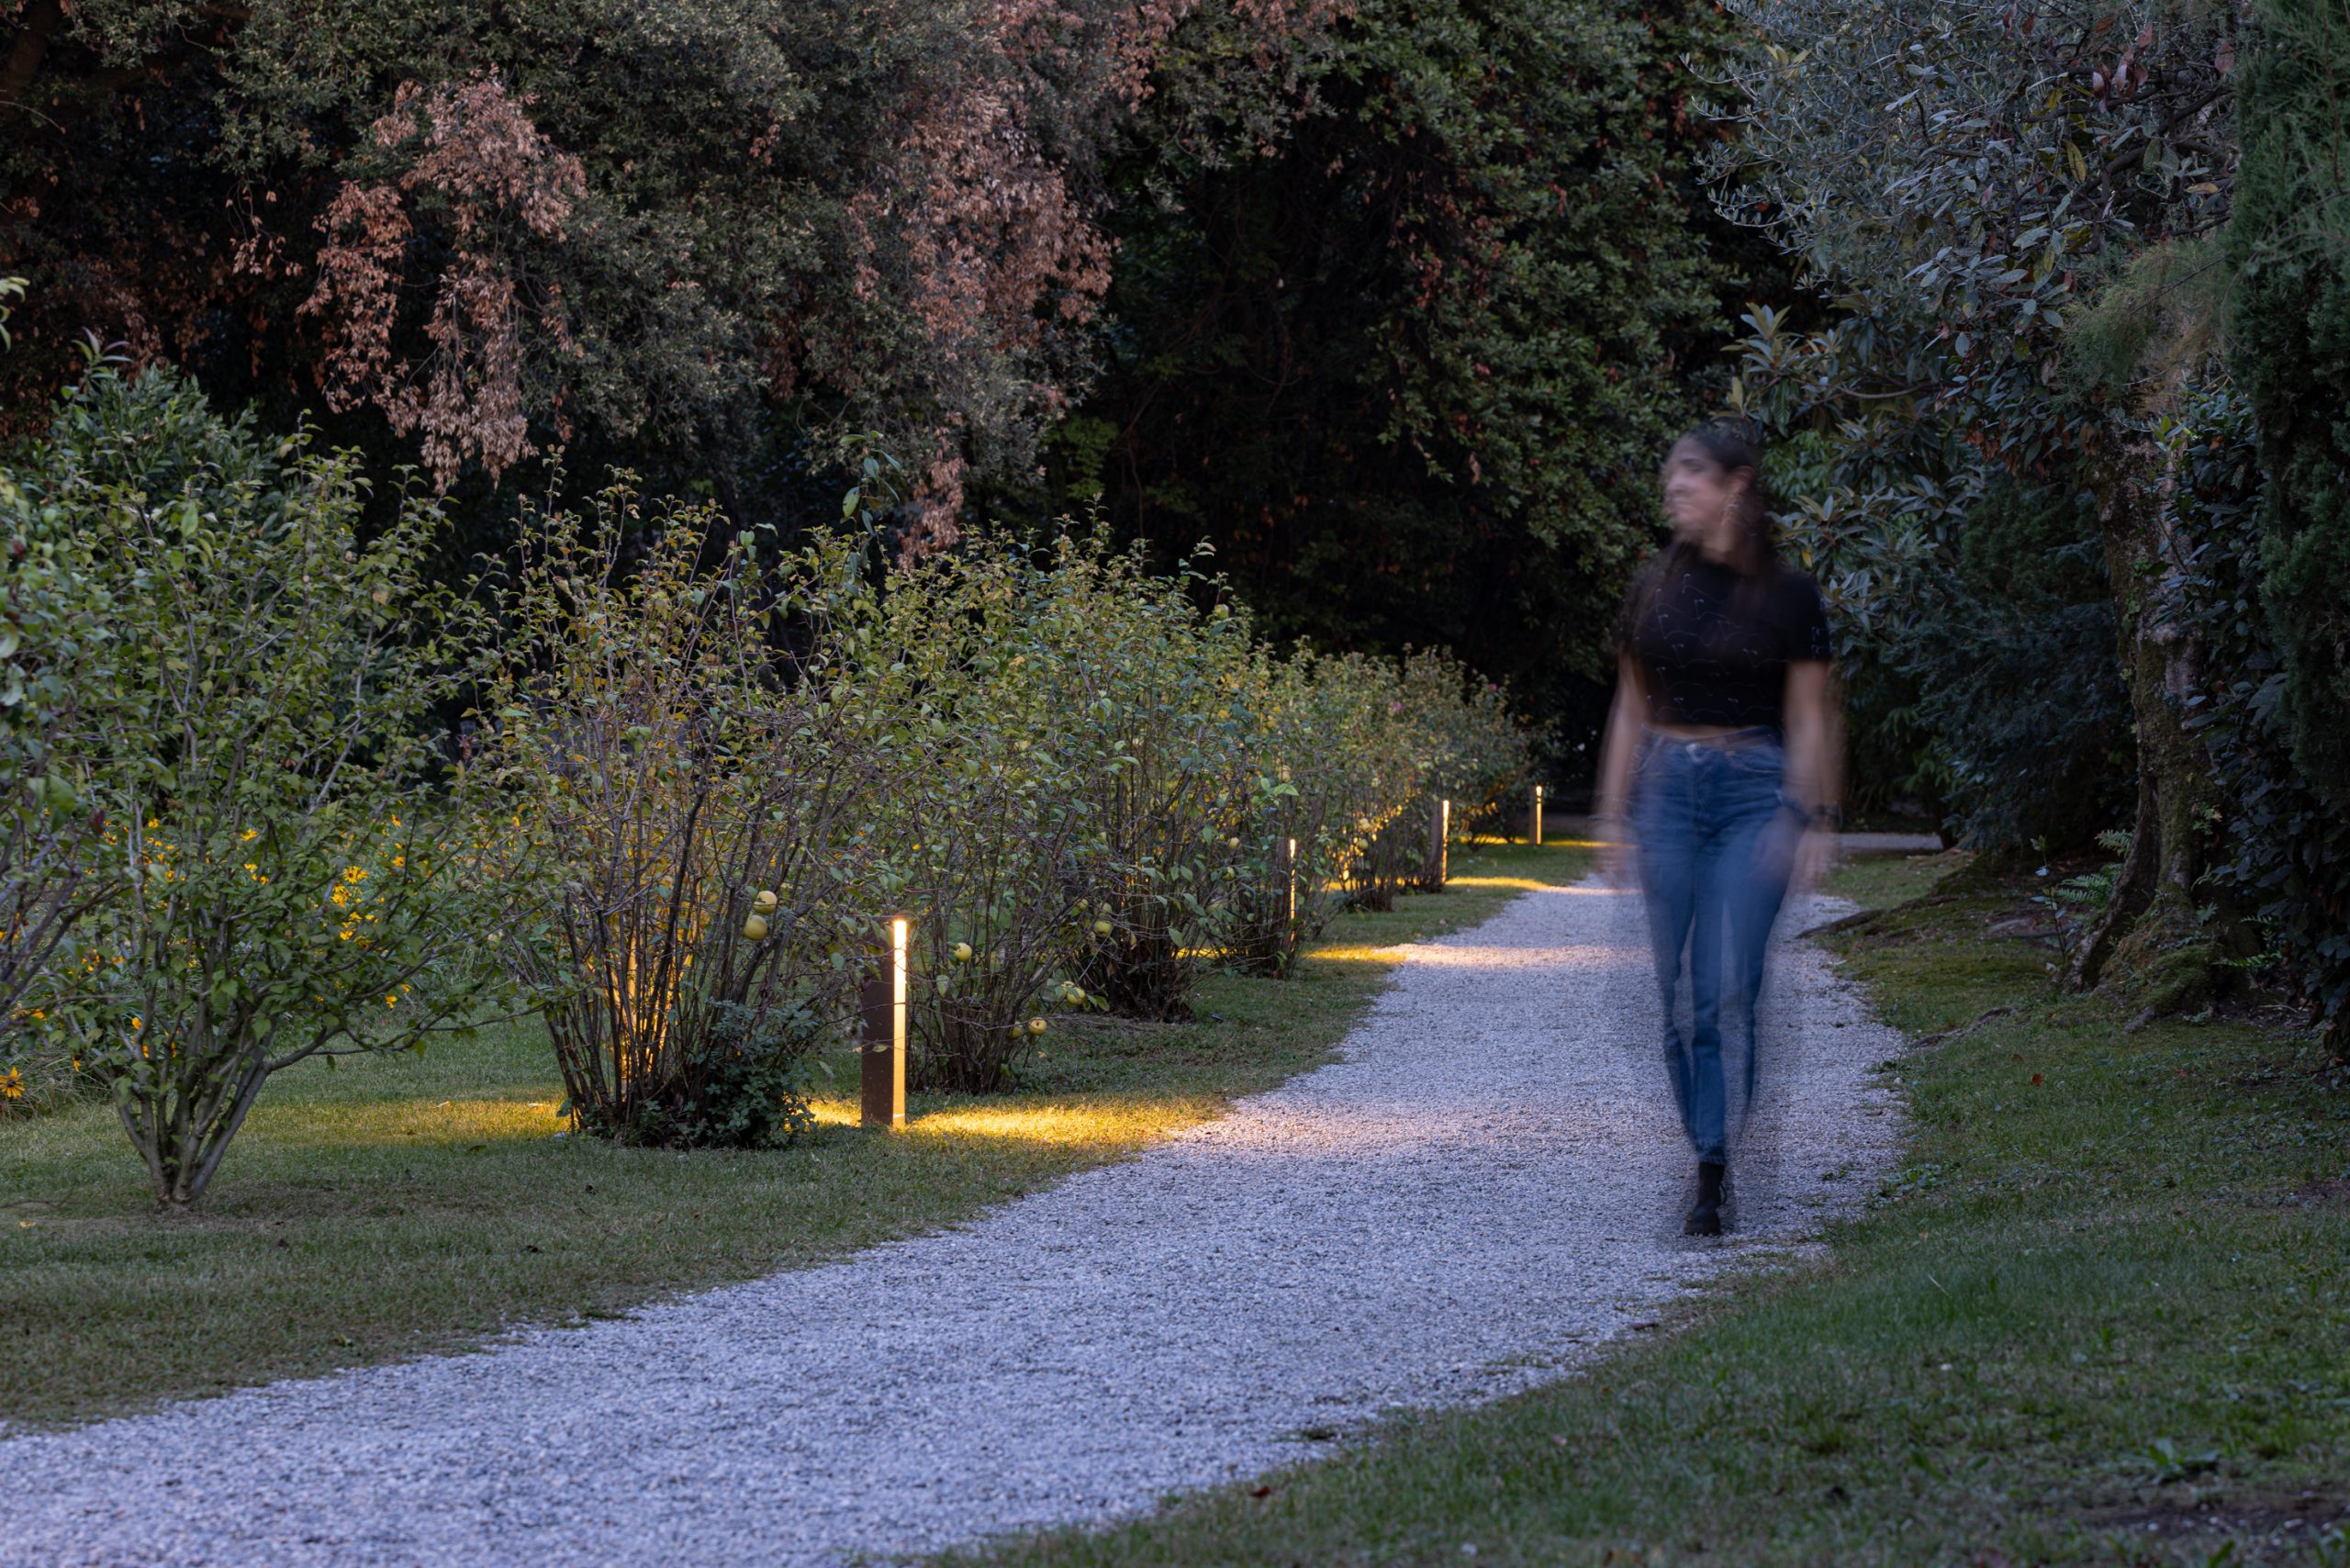 Vialetto in ghiaia di un giardino illuminato con luci da esterno e una persona che cammina